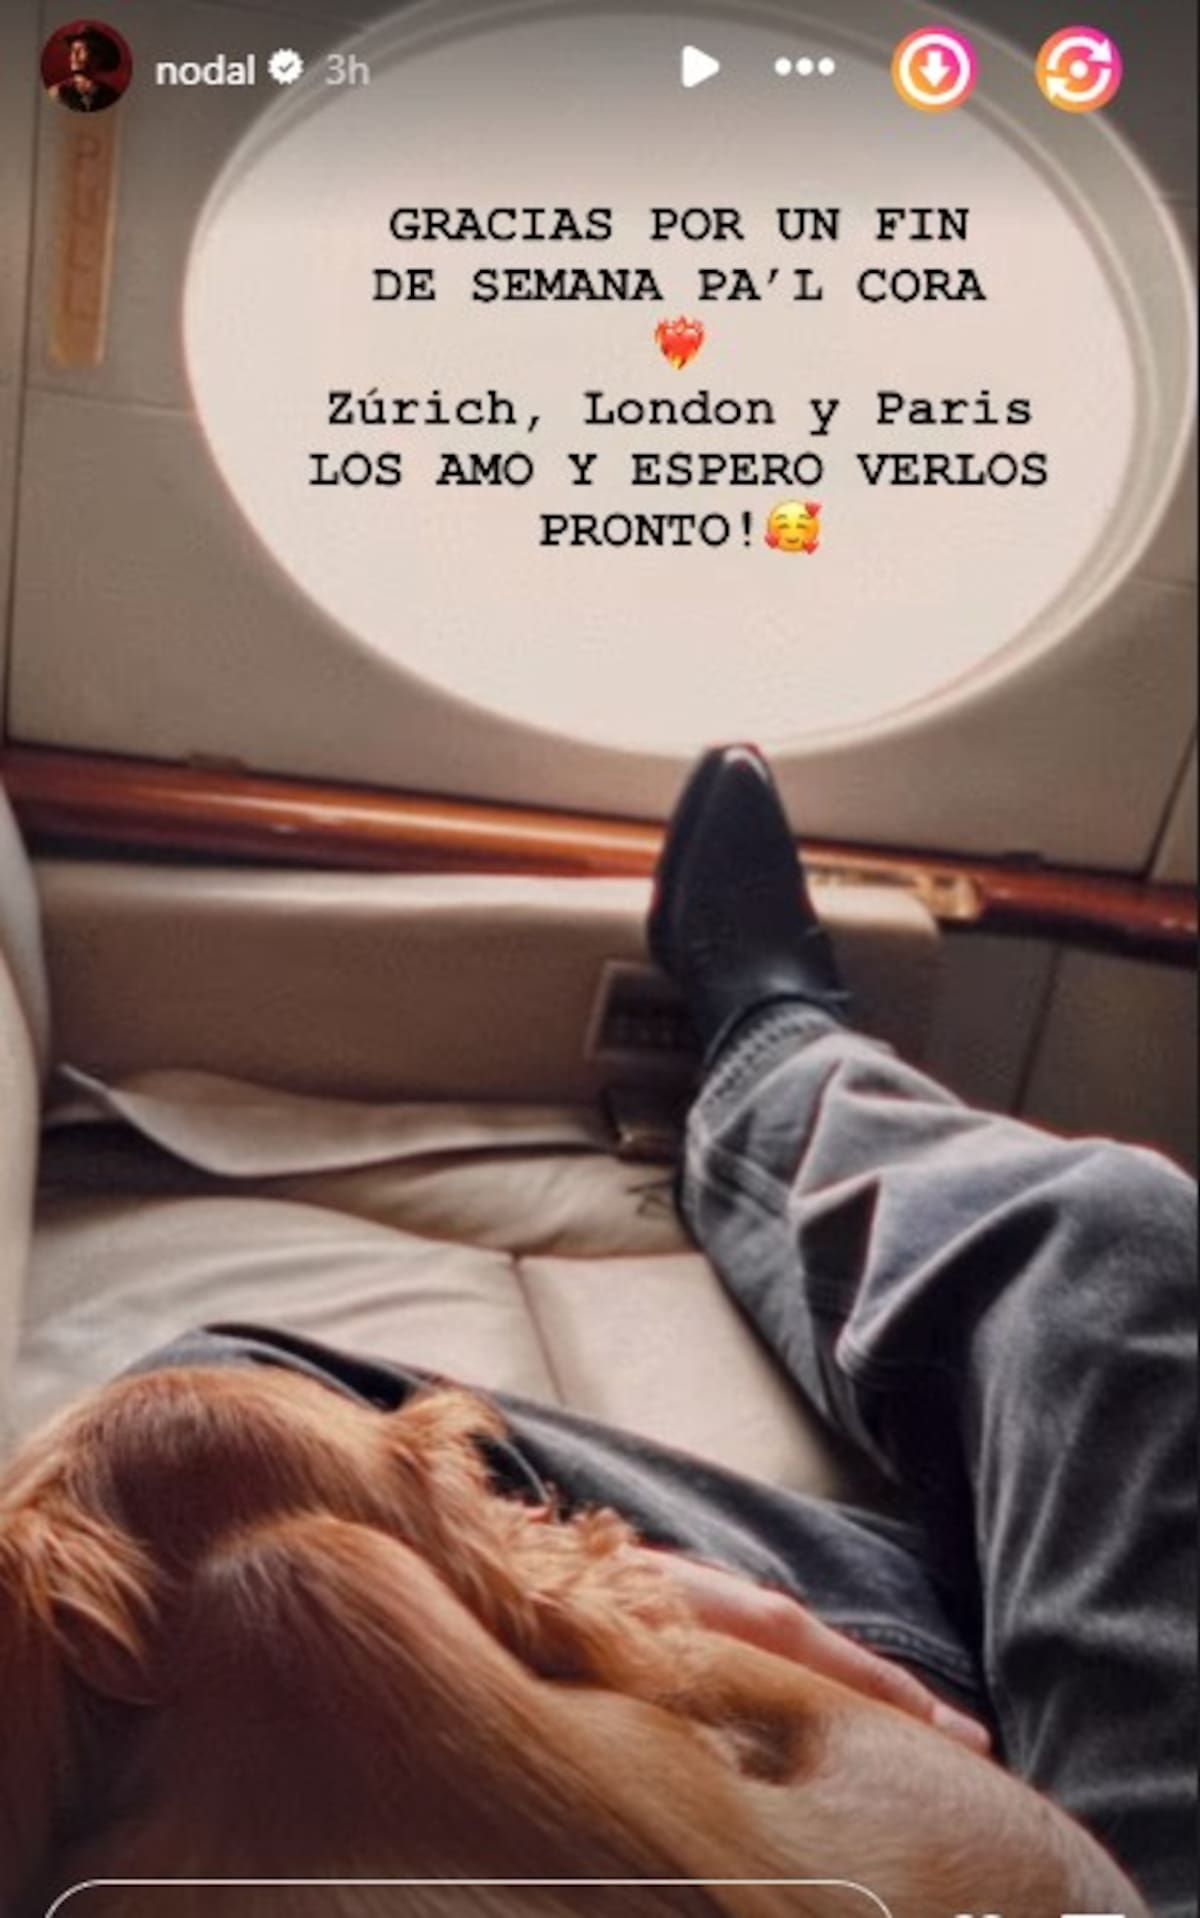 Christian Nodal continúa con éxito durante su gira por Europa. Vía Instagram.